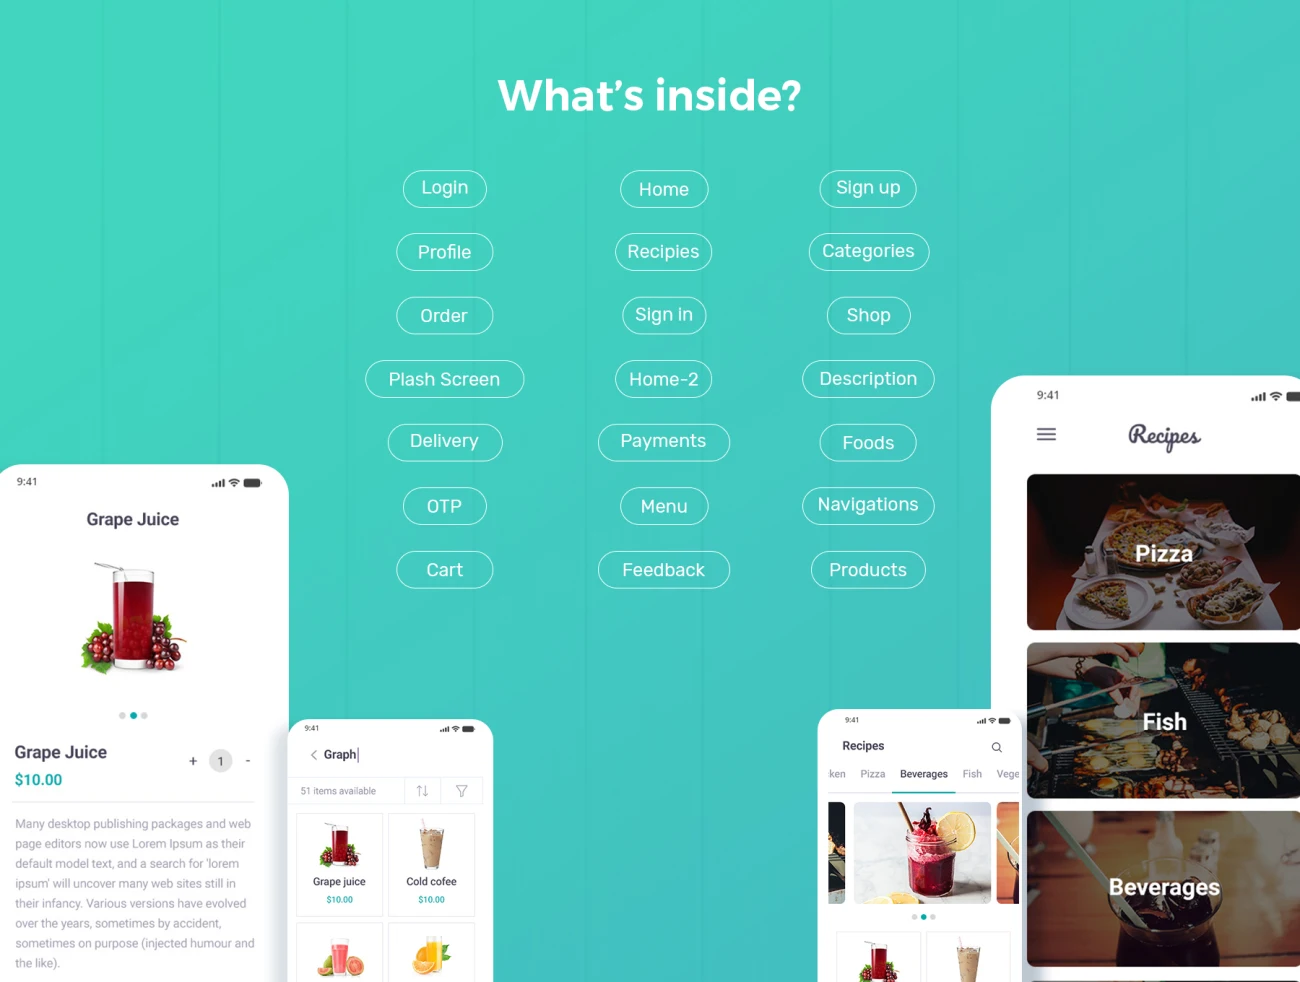 Food Recipe Mobile App UI Kit 食品配方移动app应用UI套件-UI/UX、ui套件、主页、介绍、付款、列表、卡片式、应用、引导页、支付、注册、登录页、着陆页、网站、网购、详情-到位啦UI